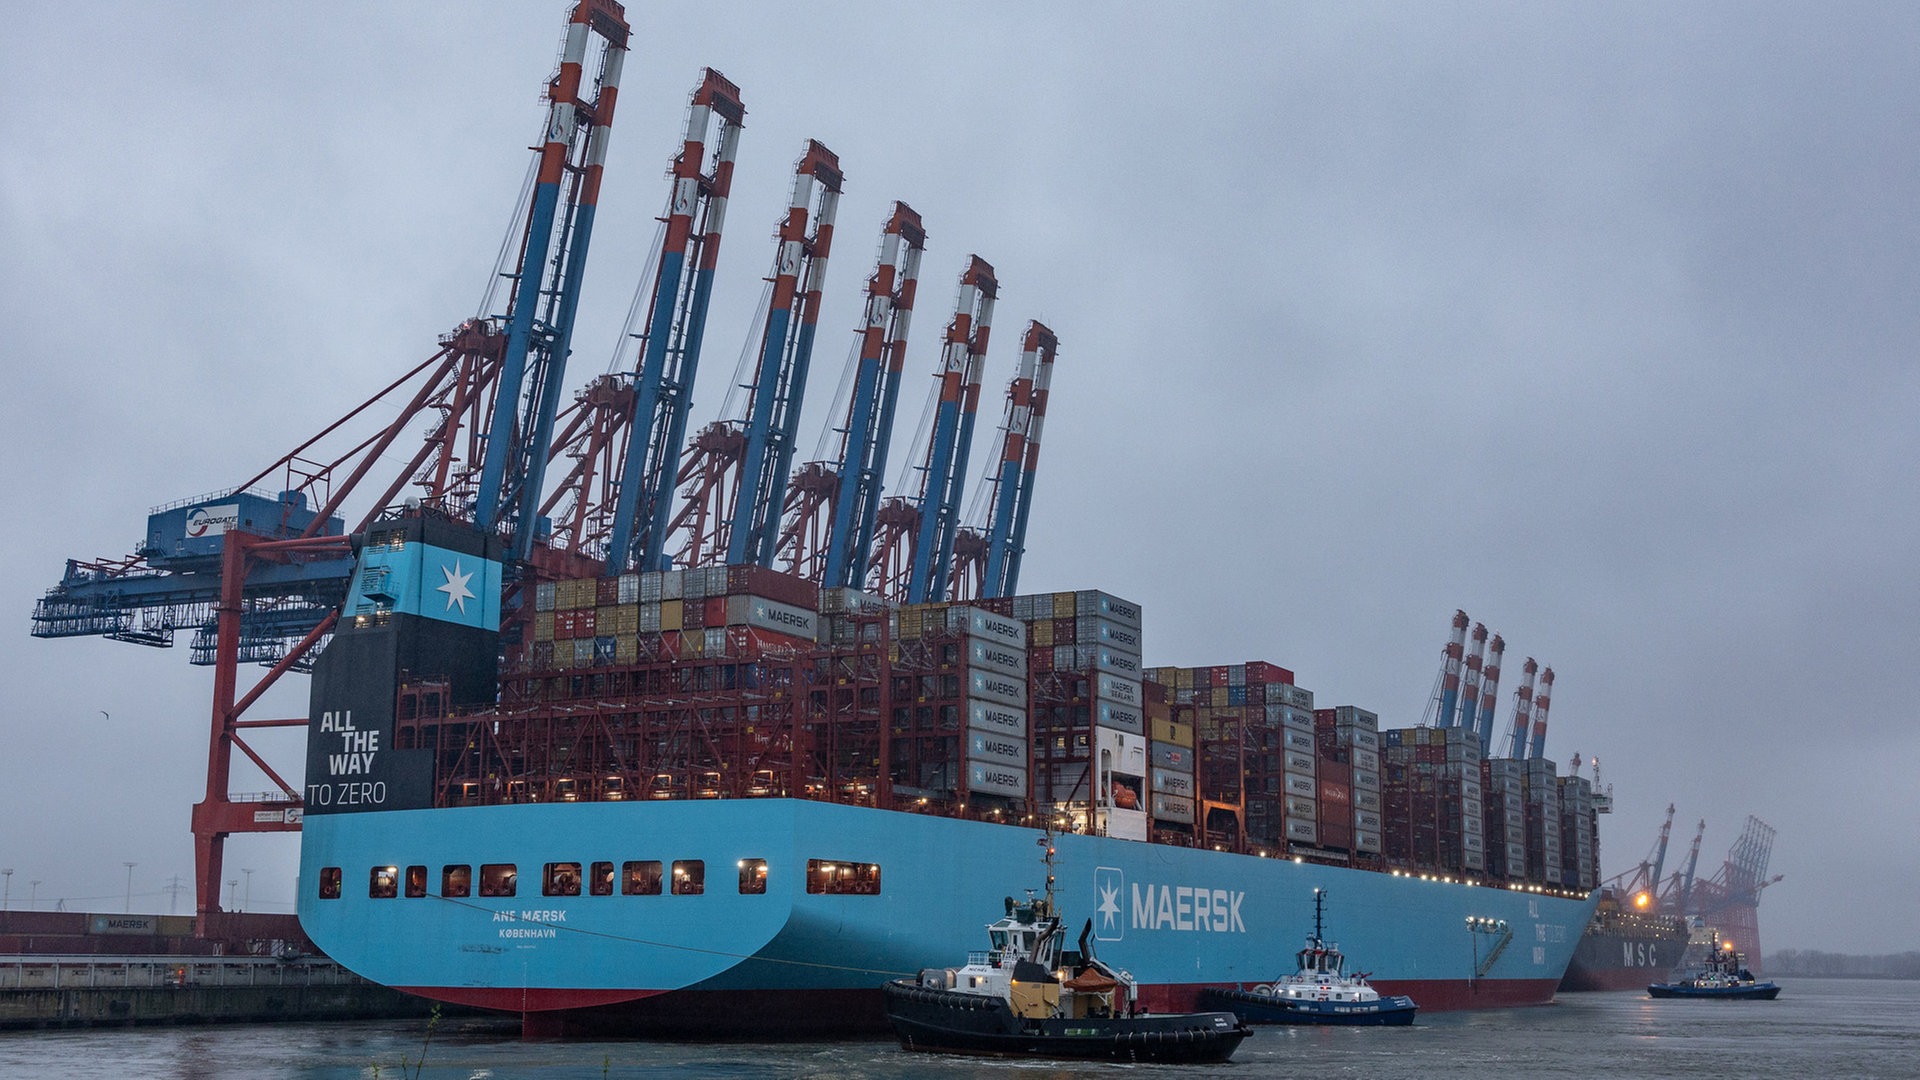 Methanol-betriebener Frachter „Ane Maersk“ erstmals in Hamburg